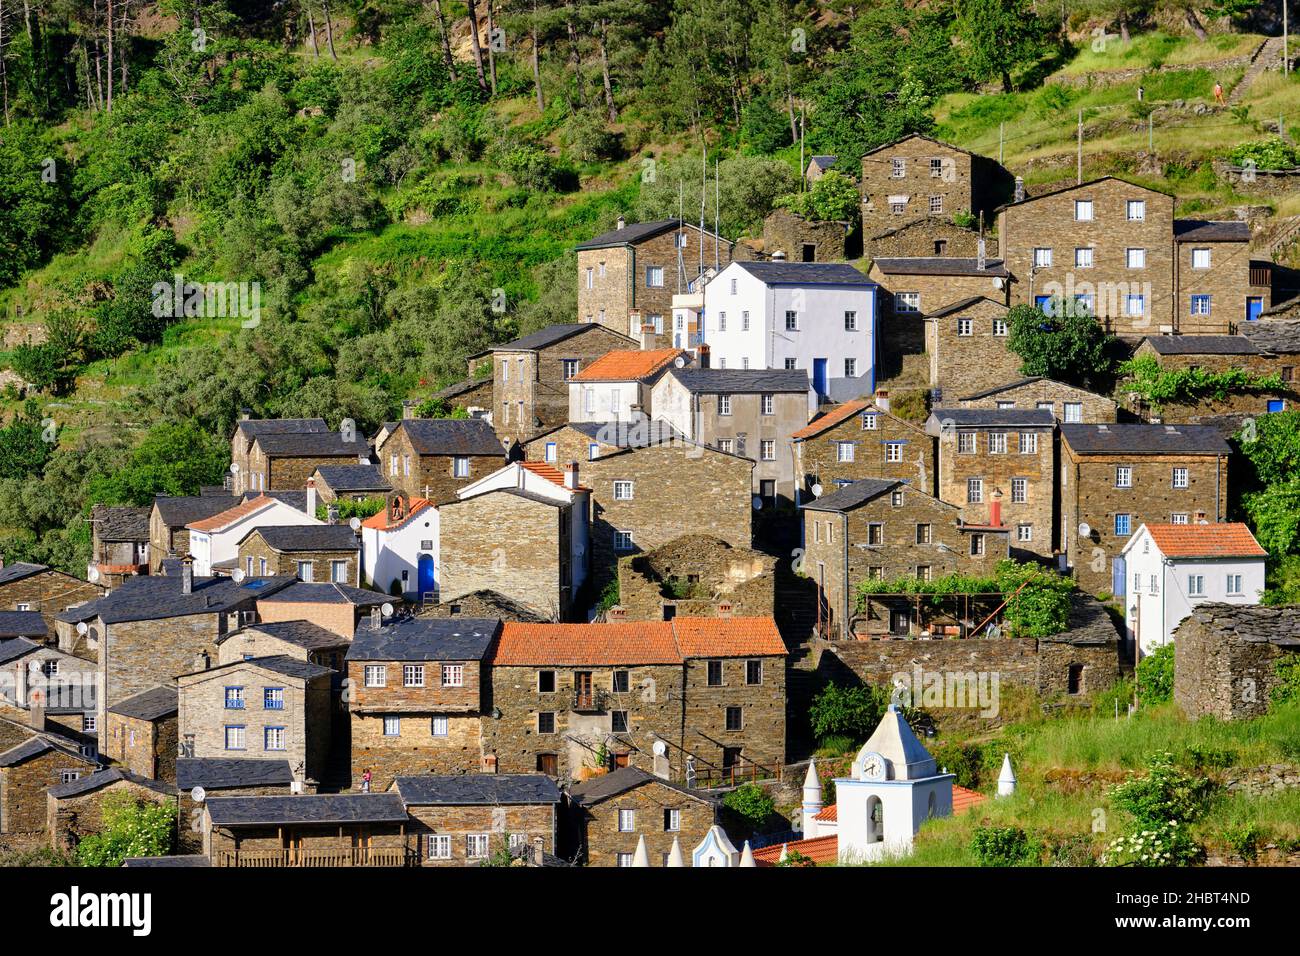 Piódão, ein traditionelles Dorf im Herzen Portugals. Alle Häuser im Dorf sind in Schiefer gebaut. Stockfoto